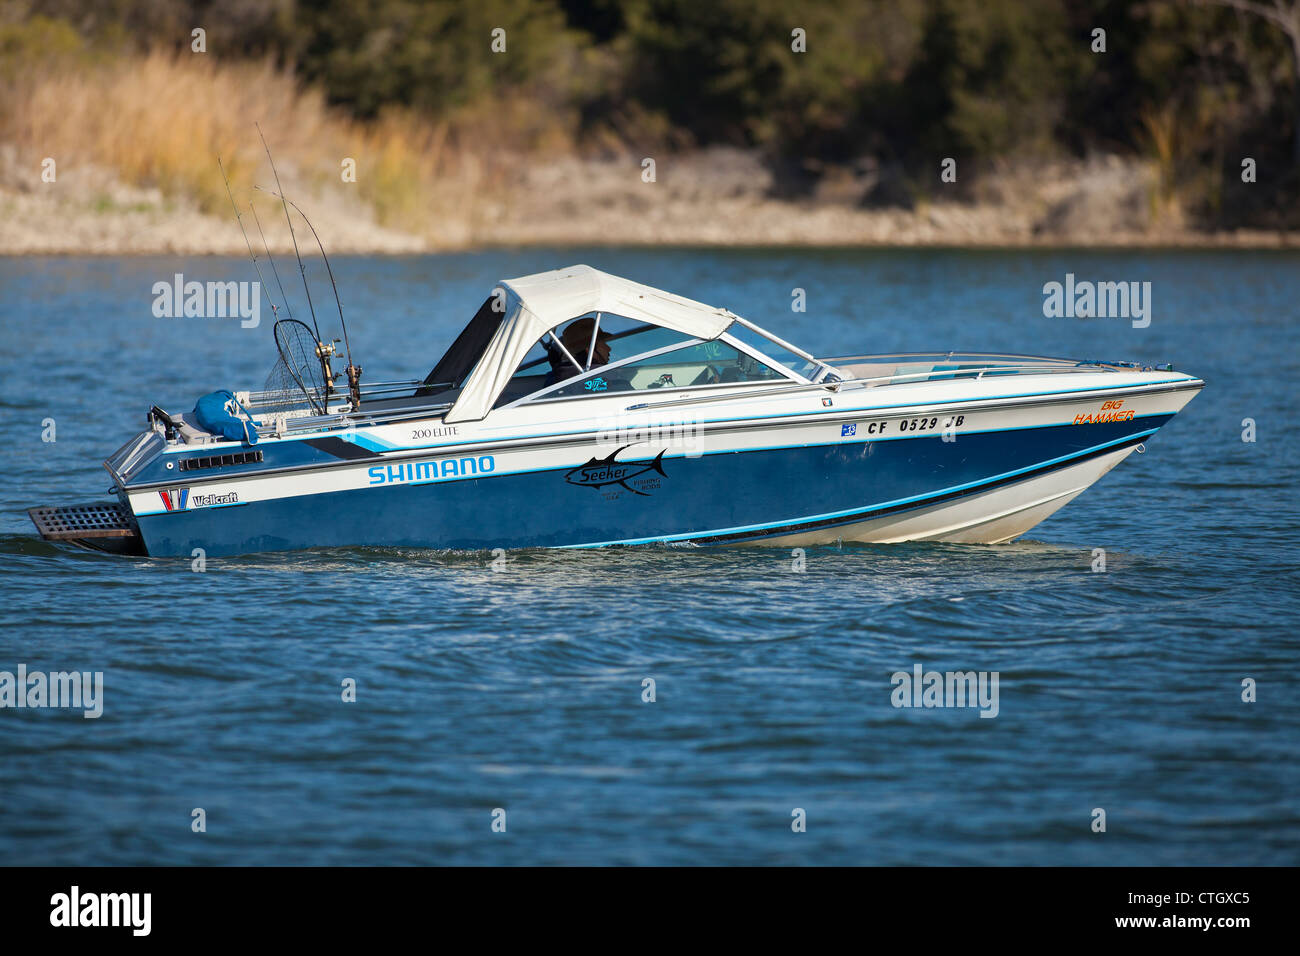 Pescatore in una barca traina per la trota lago Cachuma, Santa Ynez Valley, California, Stati Uniti d'America Foto Stock